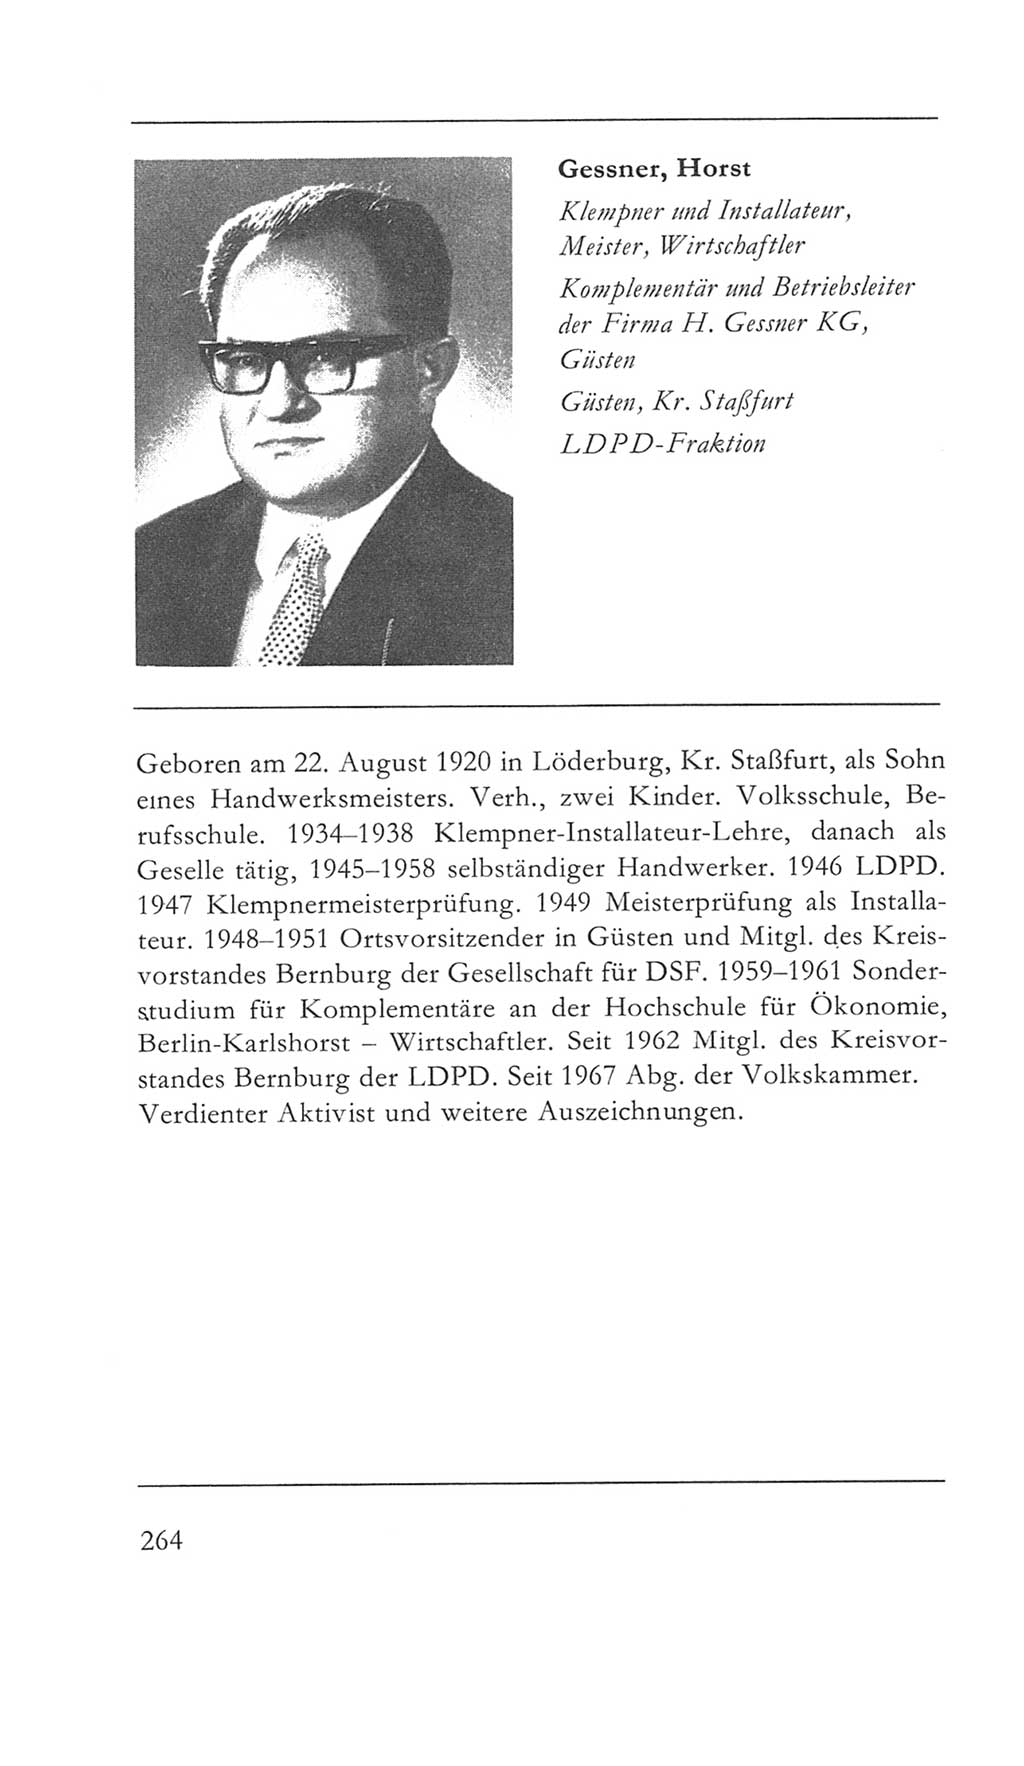 Volkskammer (VK) der Deutschen Demokratischen Republik (DDR) 5. Wahlperiode 1967-1971, Seite 264 (VK. DDR 5. WP. 1967-1971, S. 264)